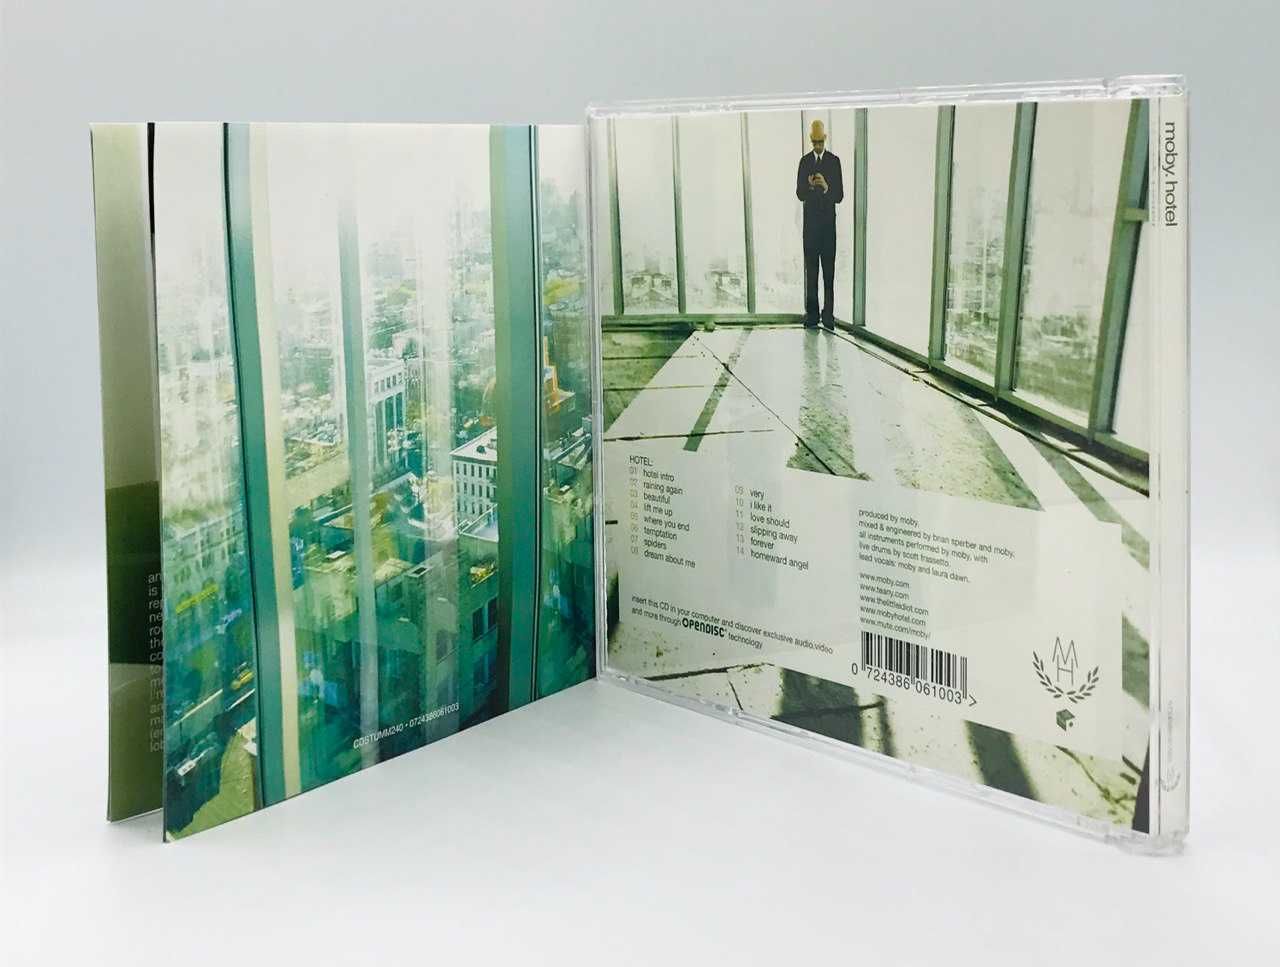 Moby – Hotel / CD, 2 CD (2005, E.U. / U.S.A.)